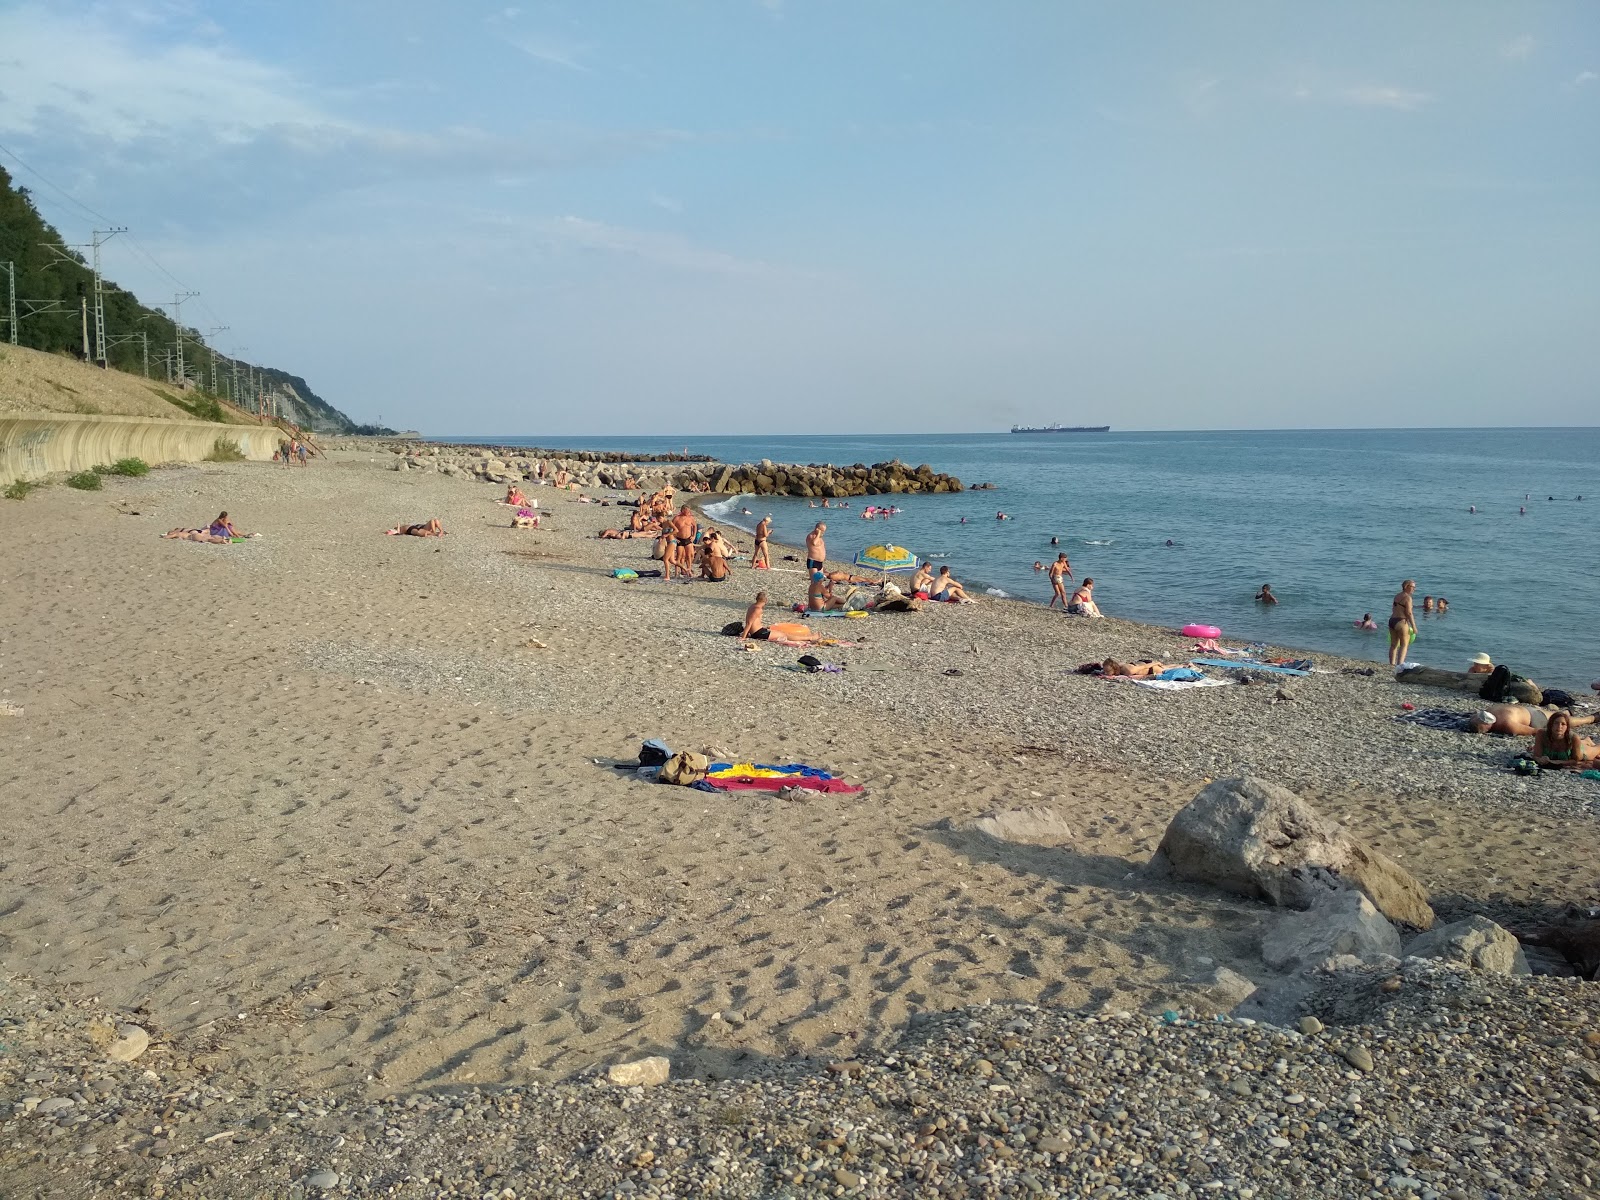 Vesna beach'in fotoğrafı çok temiz temizlik seviyesi ile